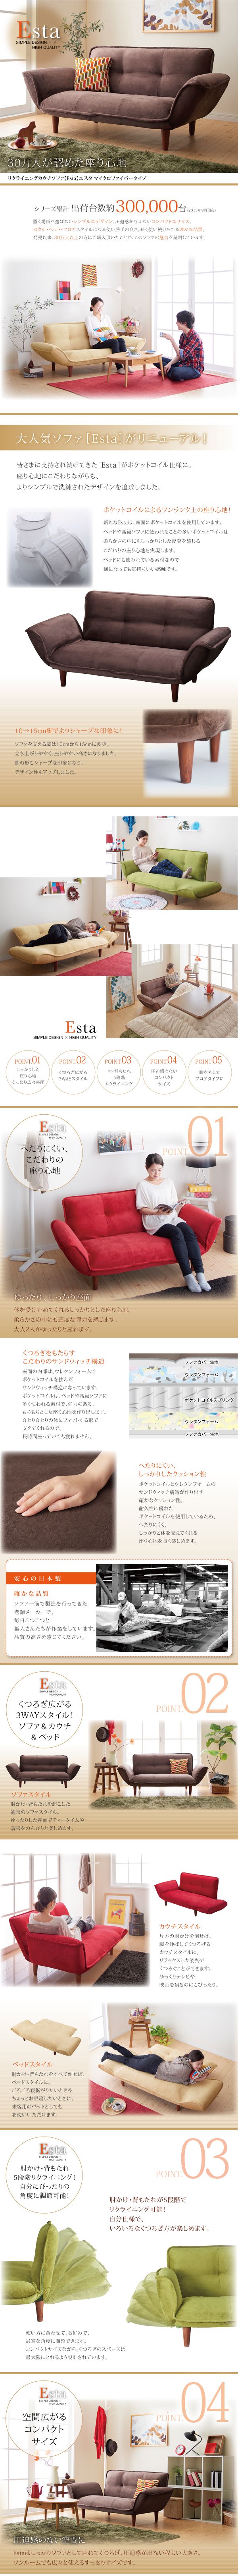 日本半額■Esta マイクロファイバータイプ/グリーン リクライニングカウチソファ [エスタ] シンプル コンパクト 安心の日本製 2人用